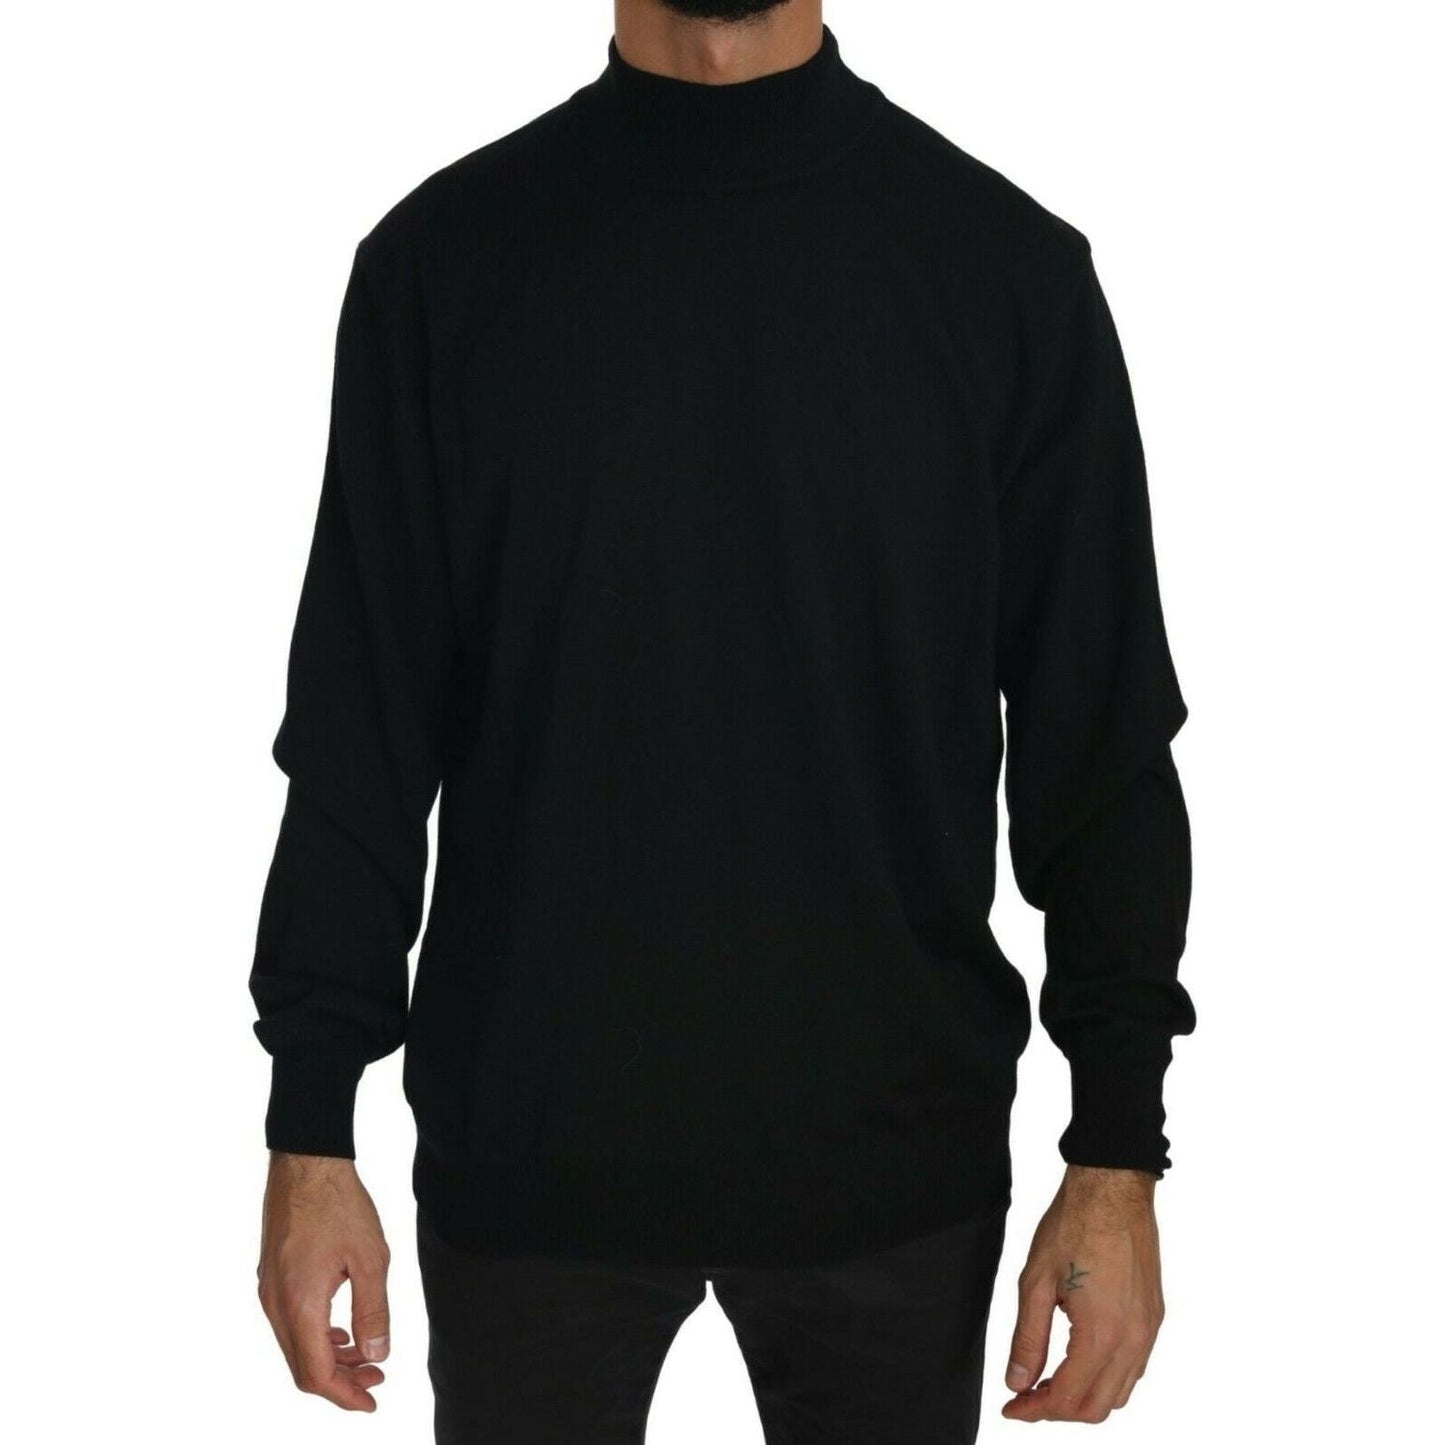 MILA SCHÖN Black Turtle Neck Pullover Top Virgin Wool Sweater black-turtle-neck-pullover-top-virgin-wool-sweater s-l1600-36-2049cd40-08a.jpg